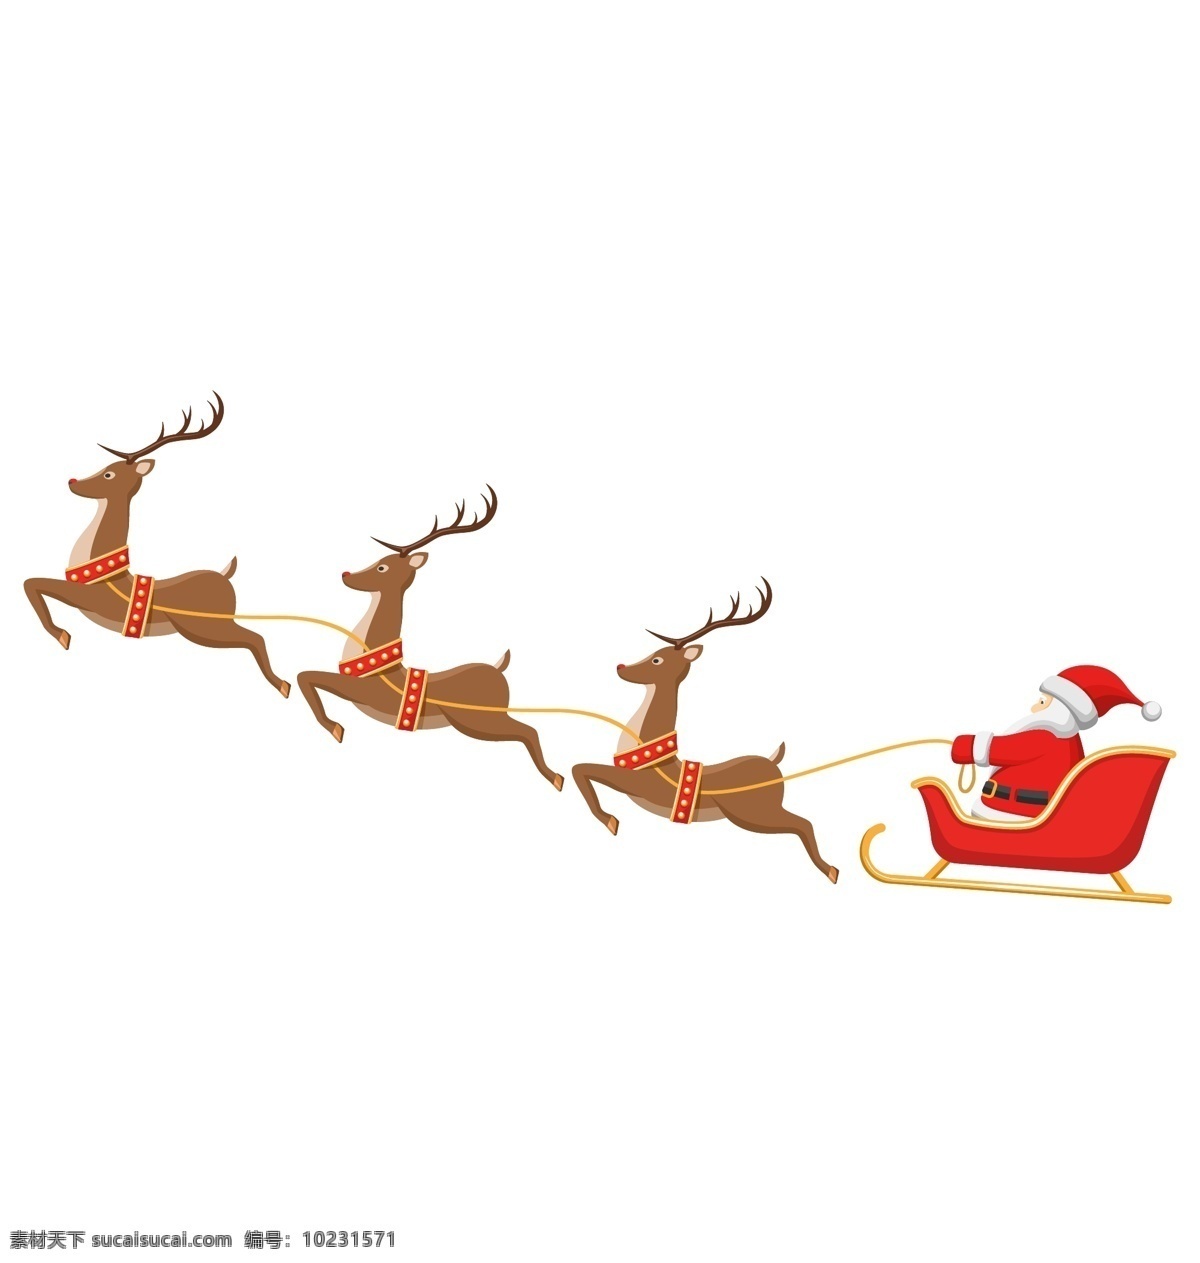 圣诞老人 矢量 礼物 圣诞鹿 麋鹿 圣诞雪橇车 高清图片